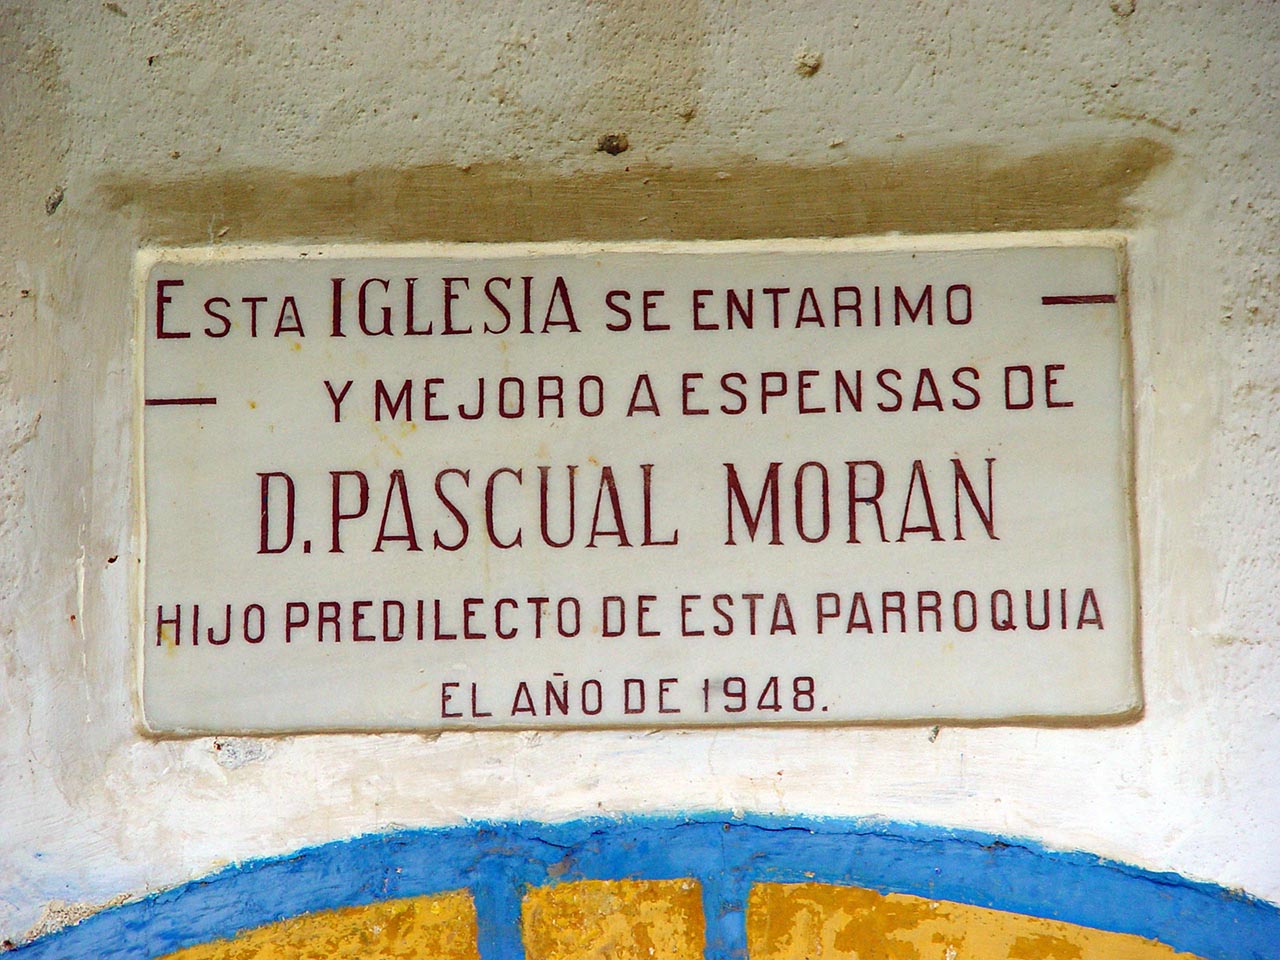 Placa en la iglesia de San Juan Evangelista. Villalibre de Somoza, León